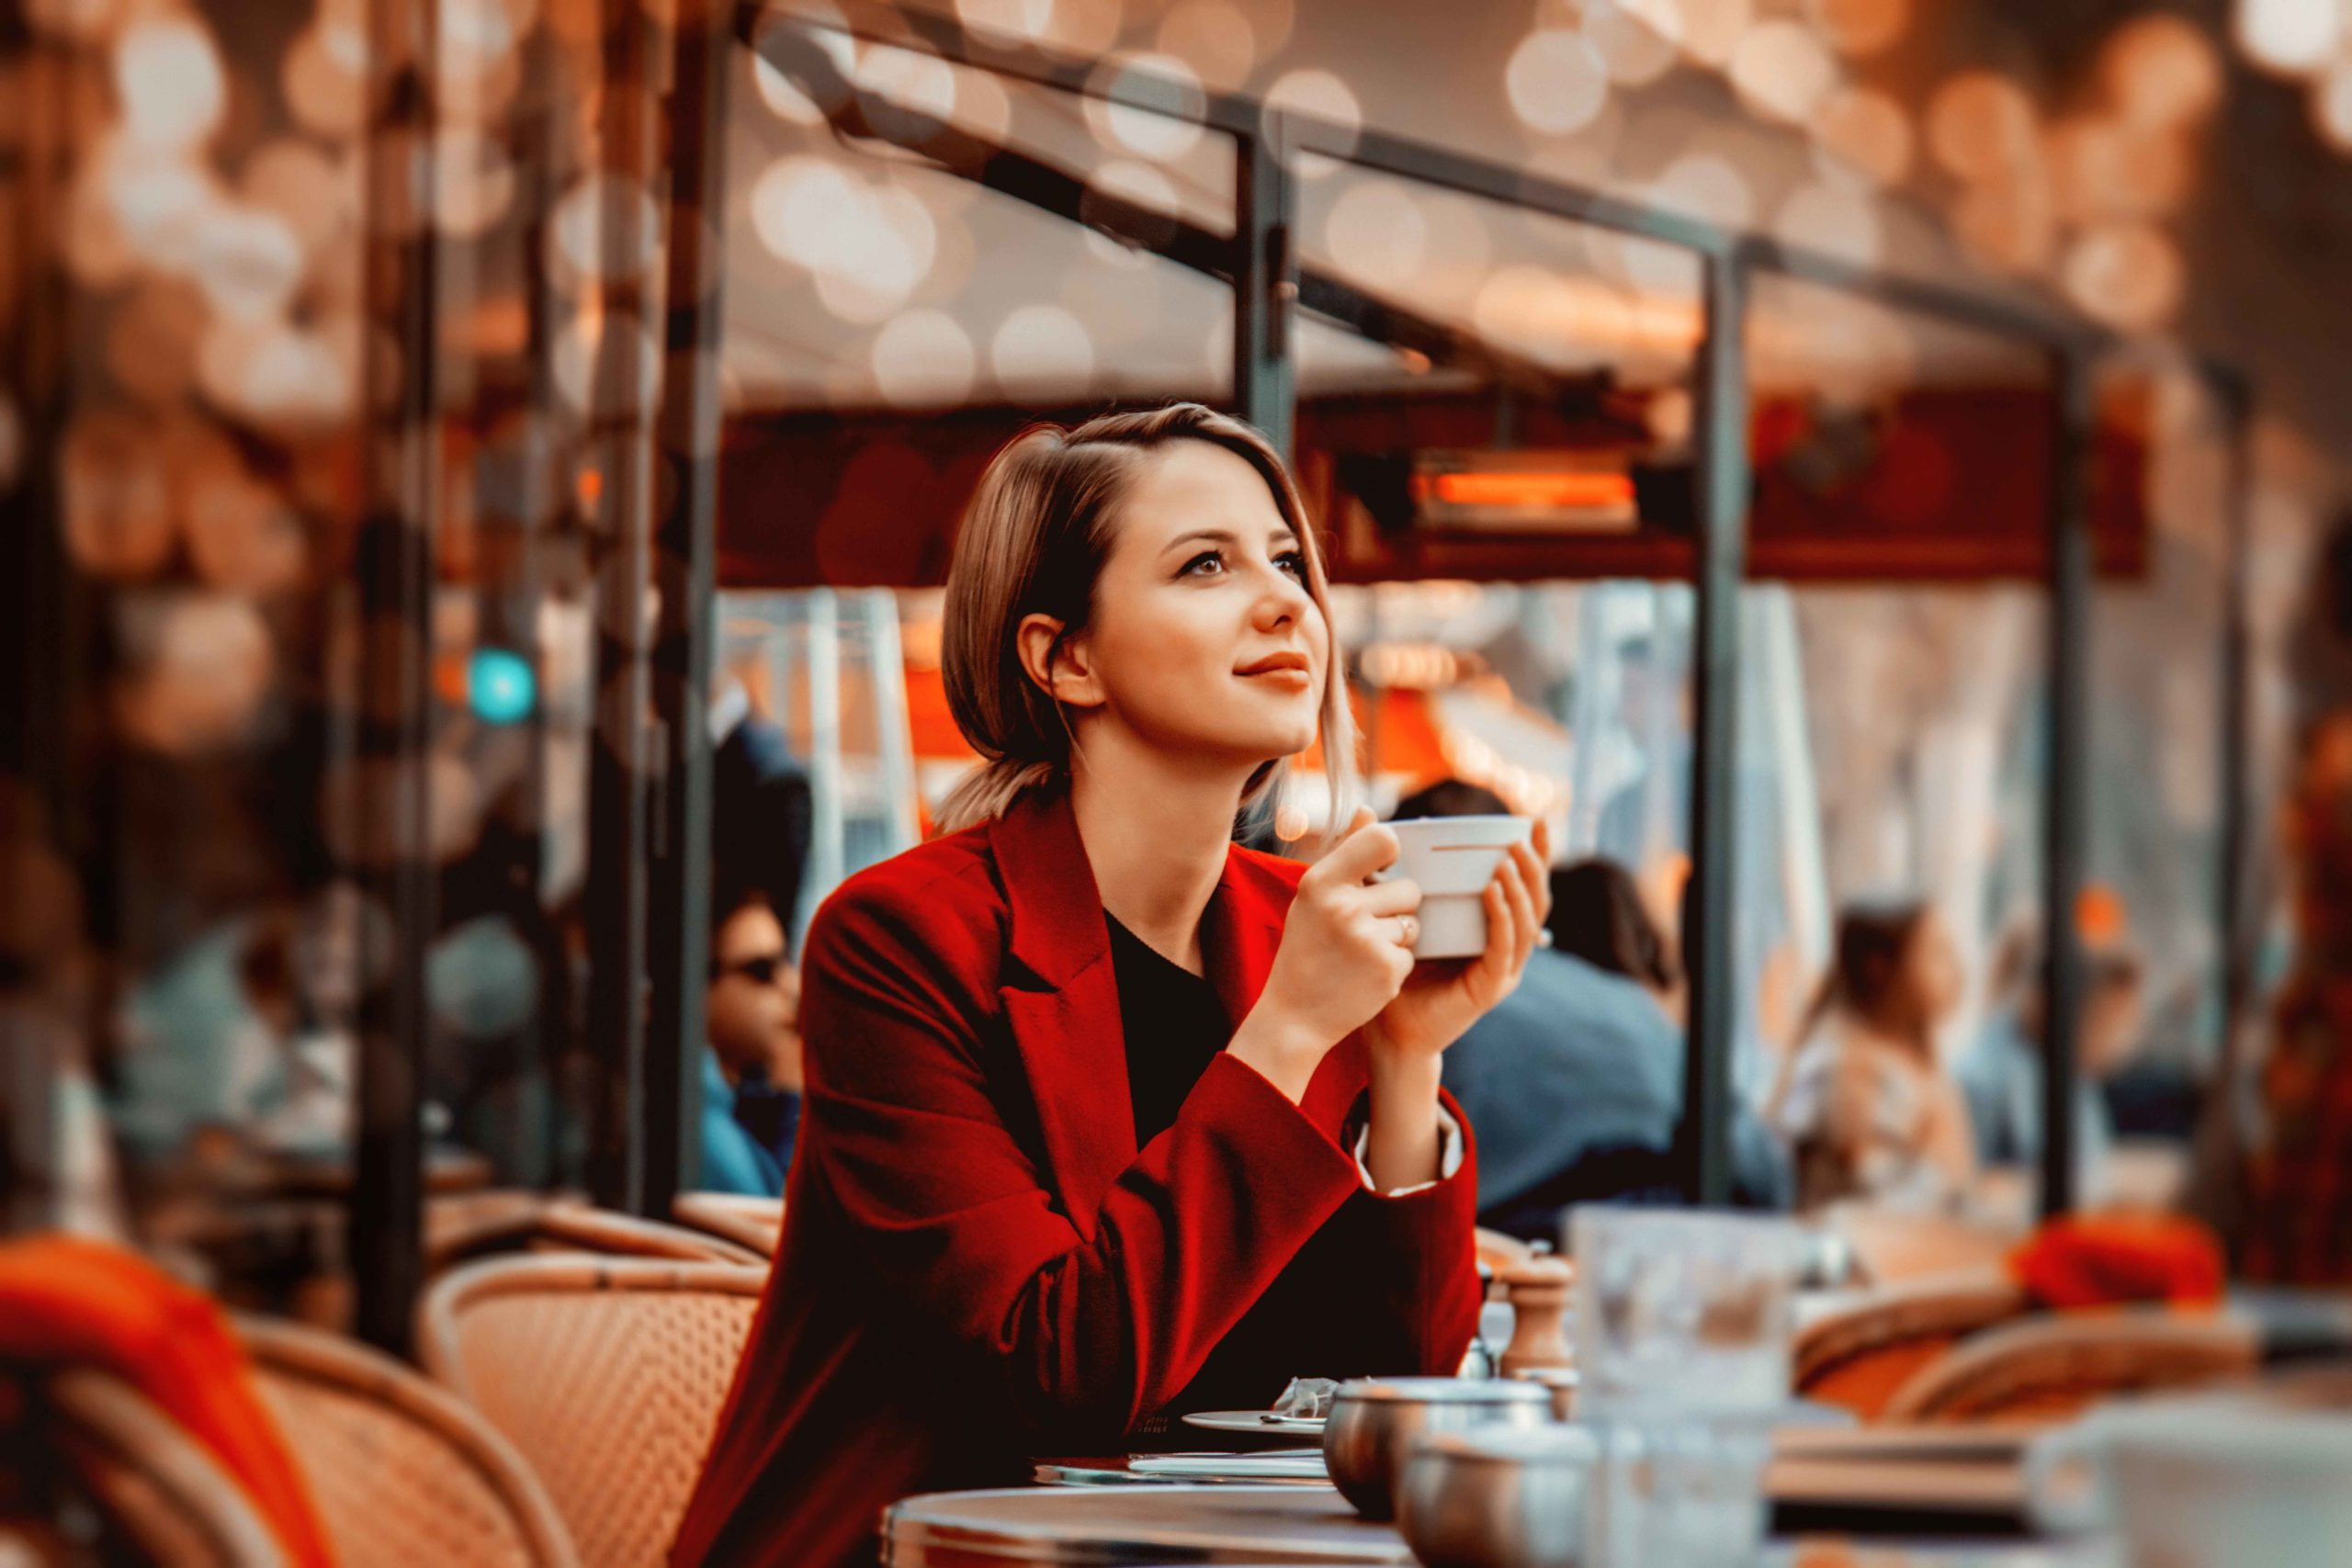 Coffee during Paris Walking Tours. Photo by Masson-Simon via Envato Elements